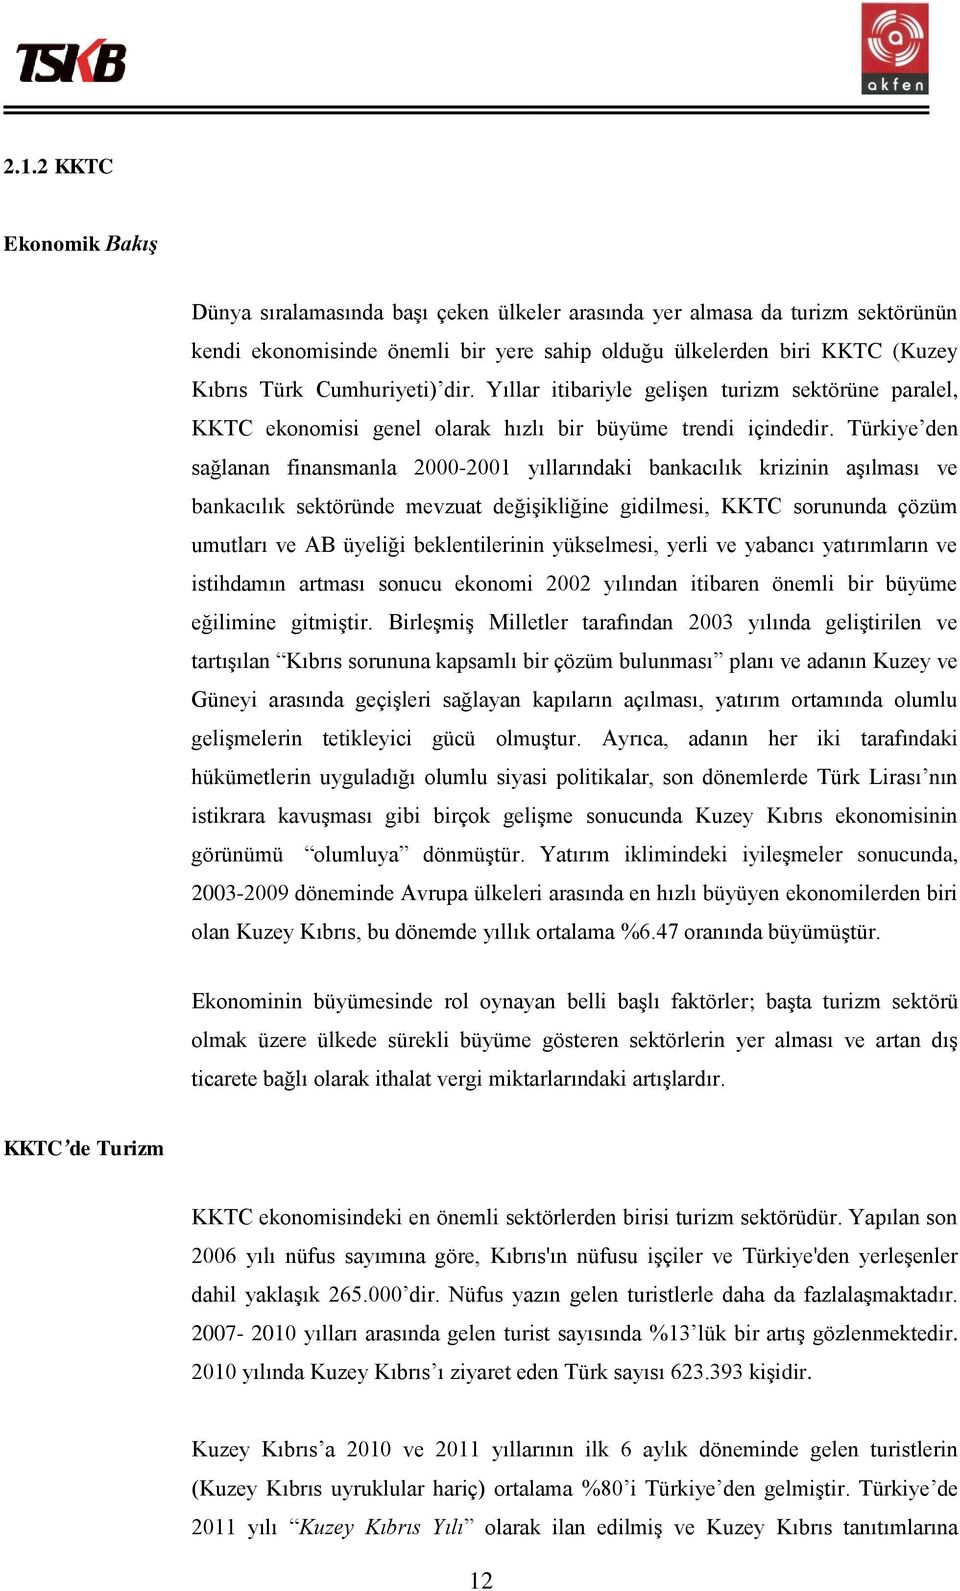 Türkiye den sağlanan finansmanla 2000-2001 yıllarındaki bankacılık krizinin aşılması ve bankacılık sektöründe mevzuat değişikliğine gidilmesi, KKTC sorununda çözüm umutları ve AB üyeliği